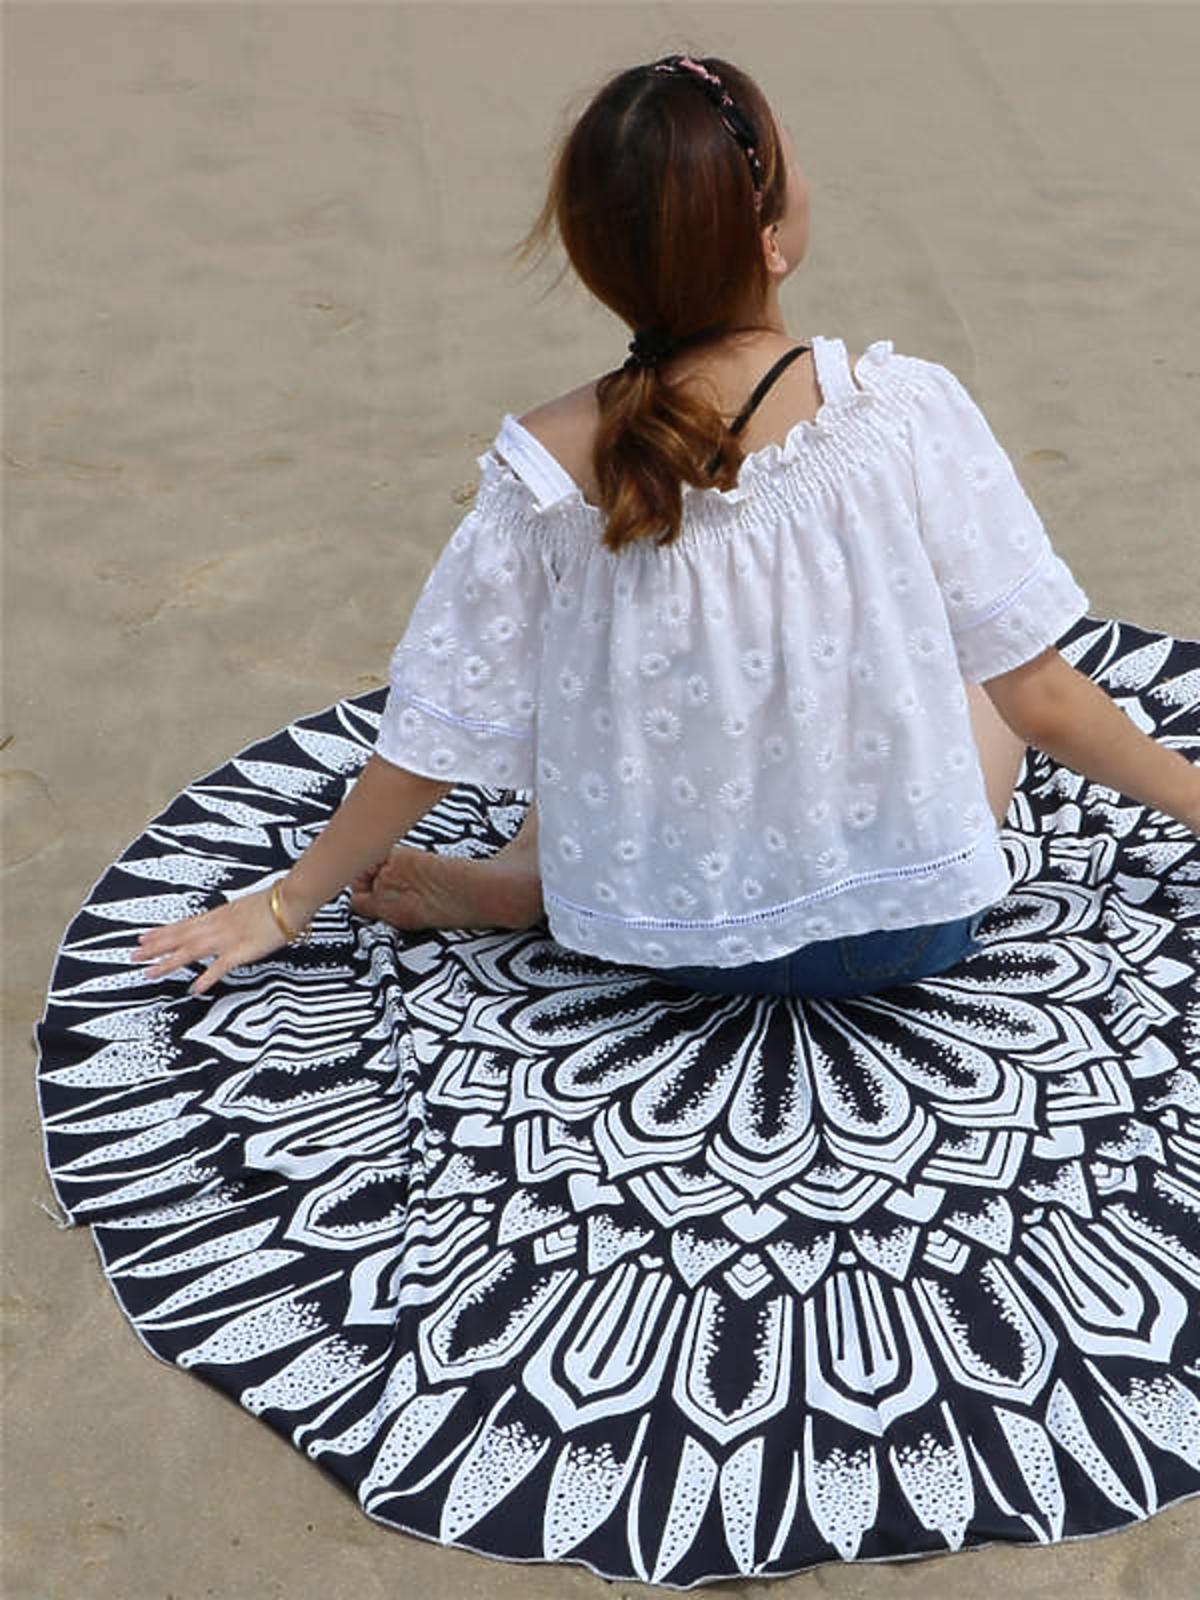 okrągły kocyk plażowy ręcznik plażowy modny orientalne wzory.jpg